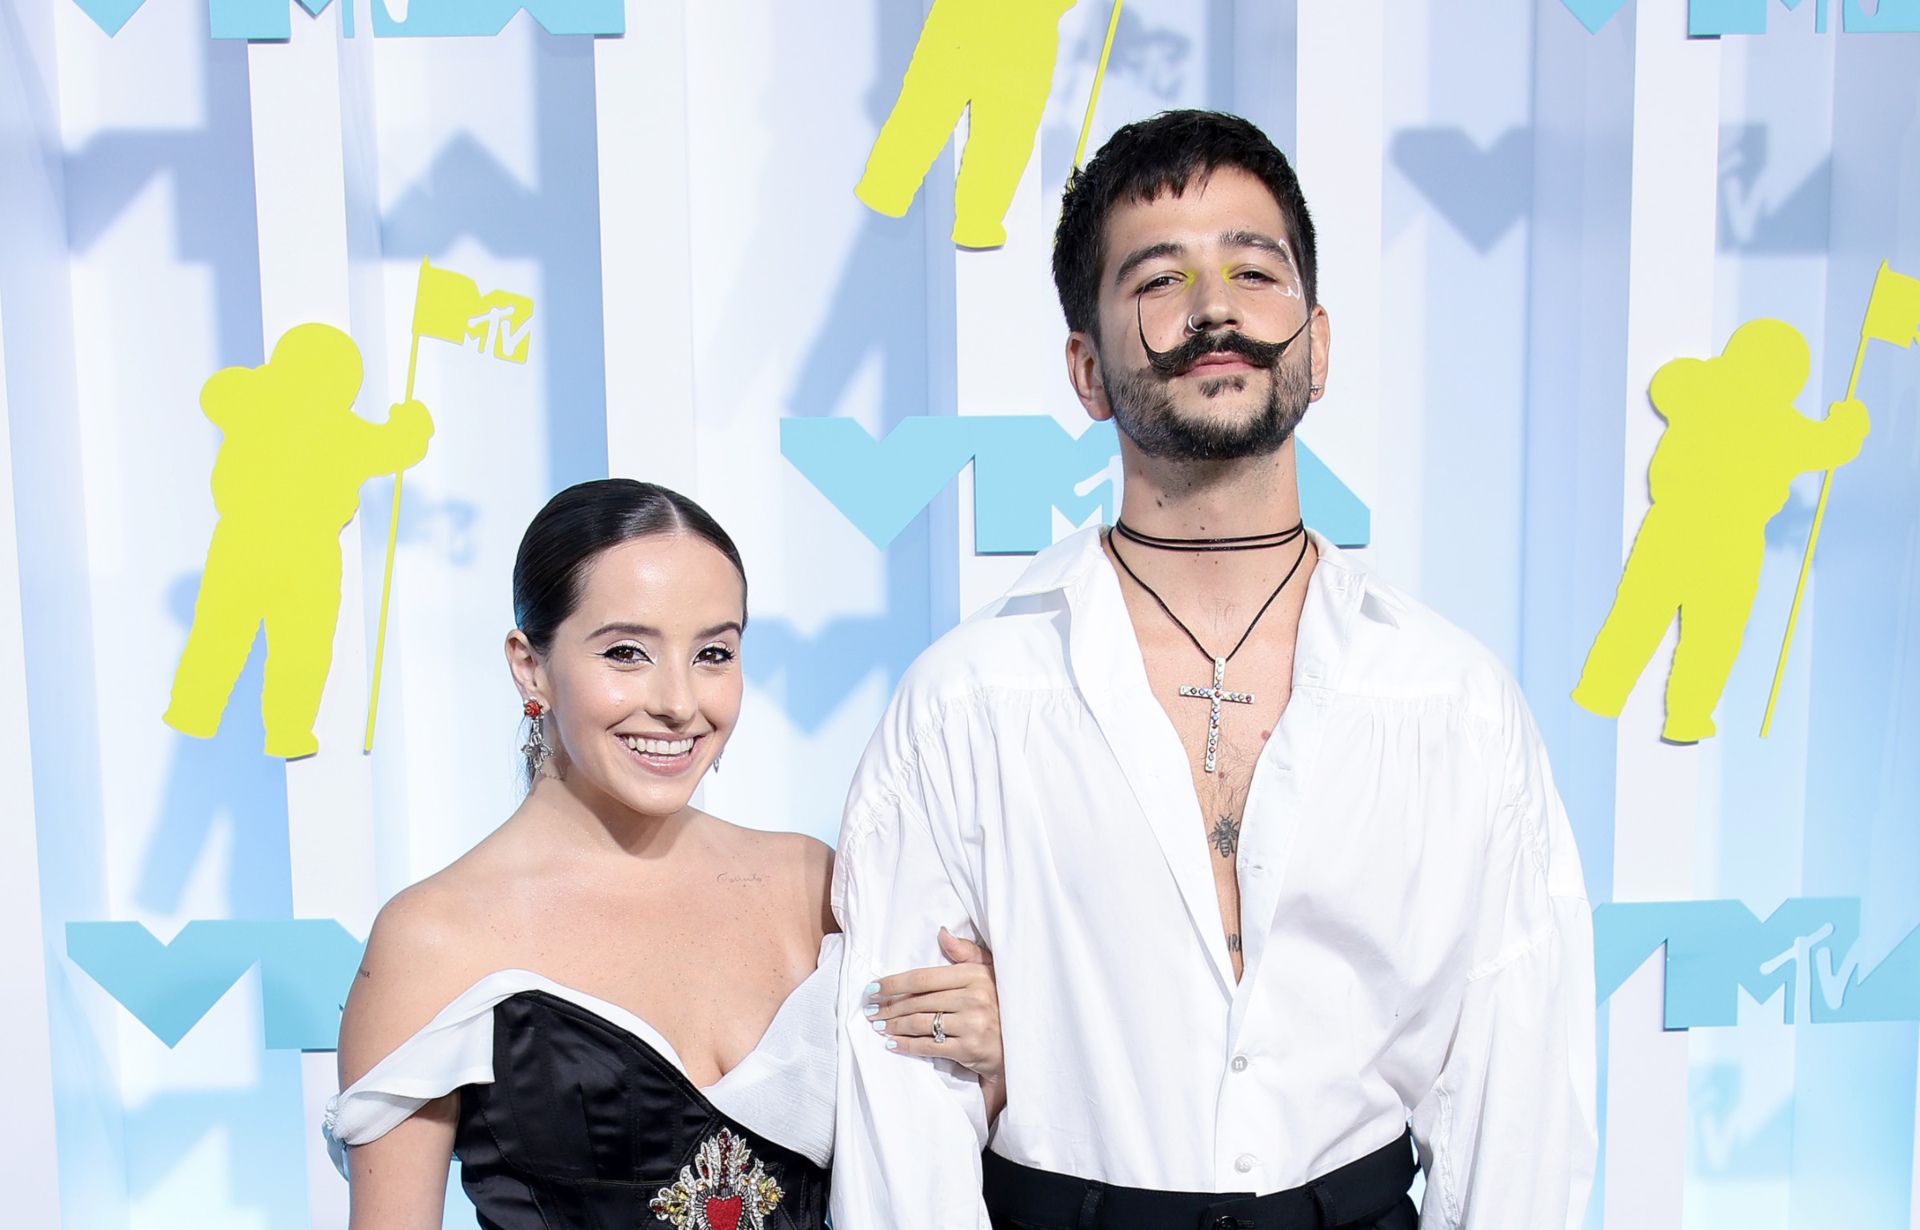 Evaluna y Camilo reciben duras críticas por su vestimenta: 'Mucho dinero, pero nada de estilo' - La Vibra